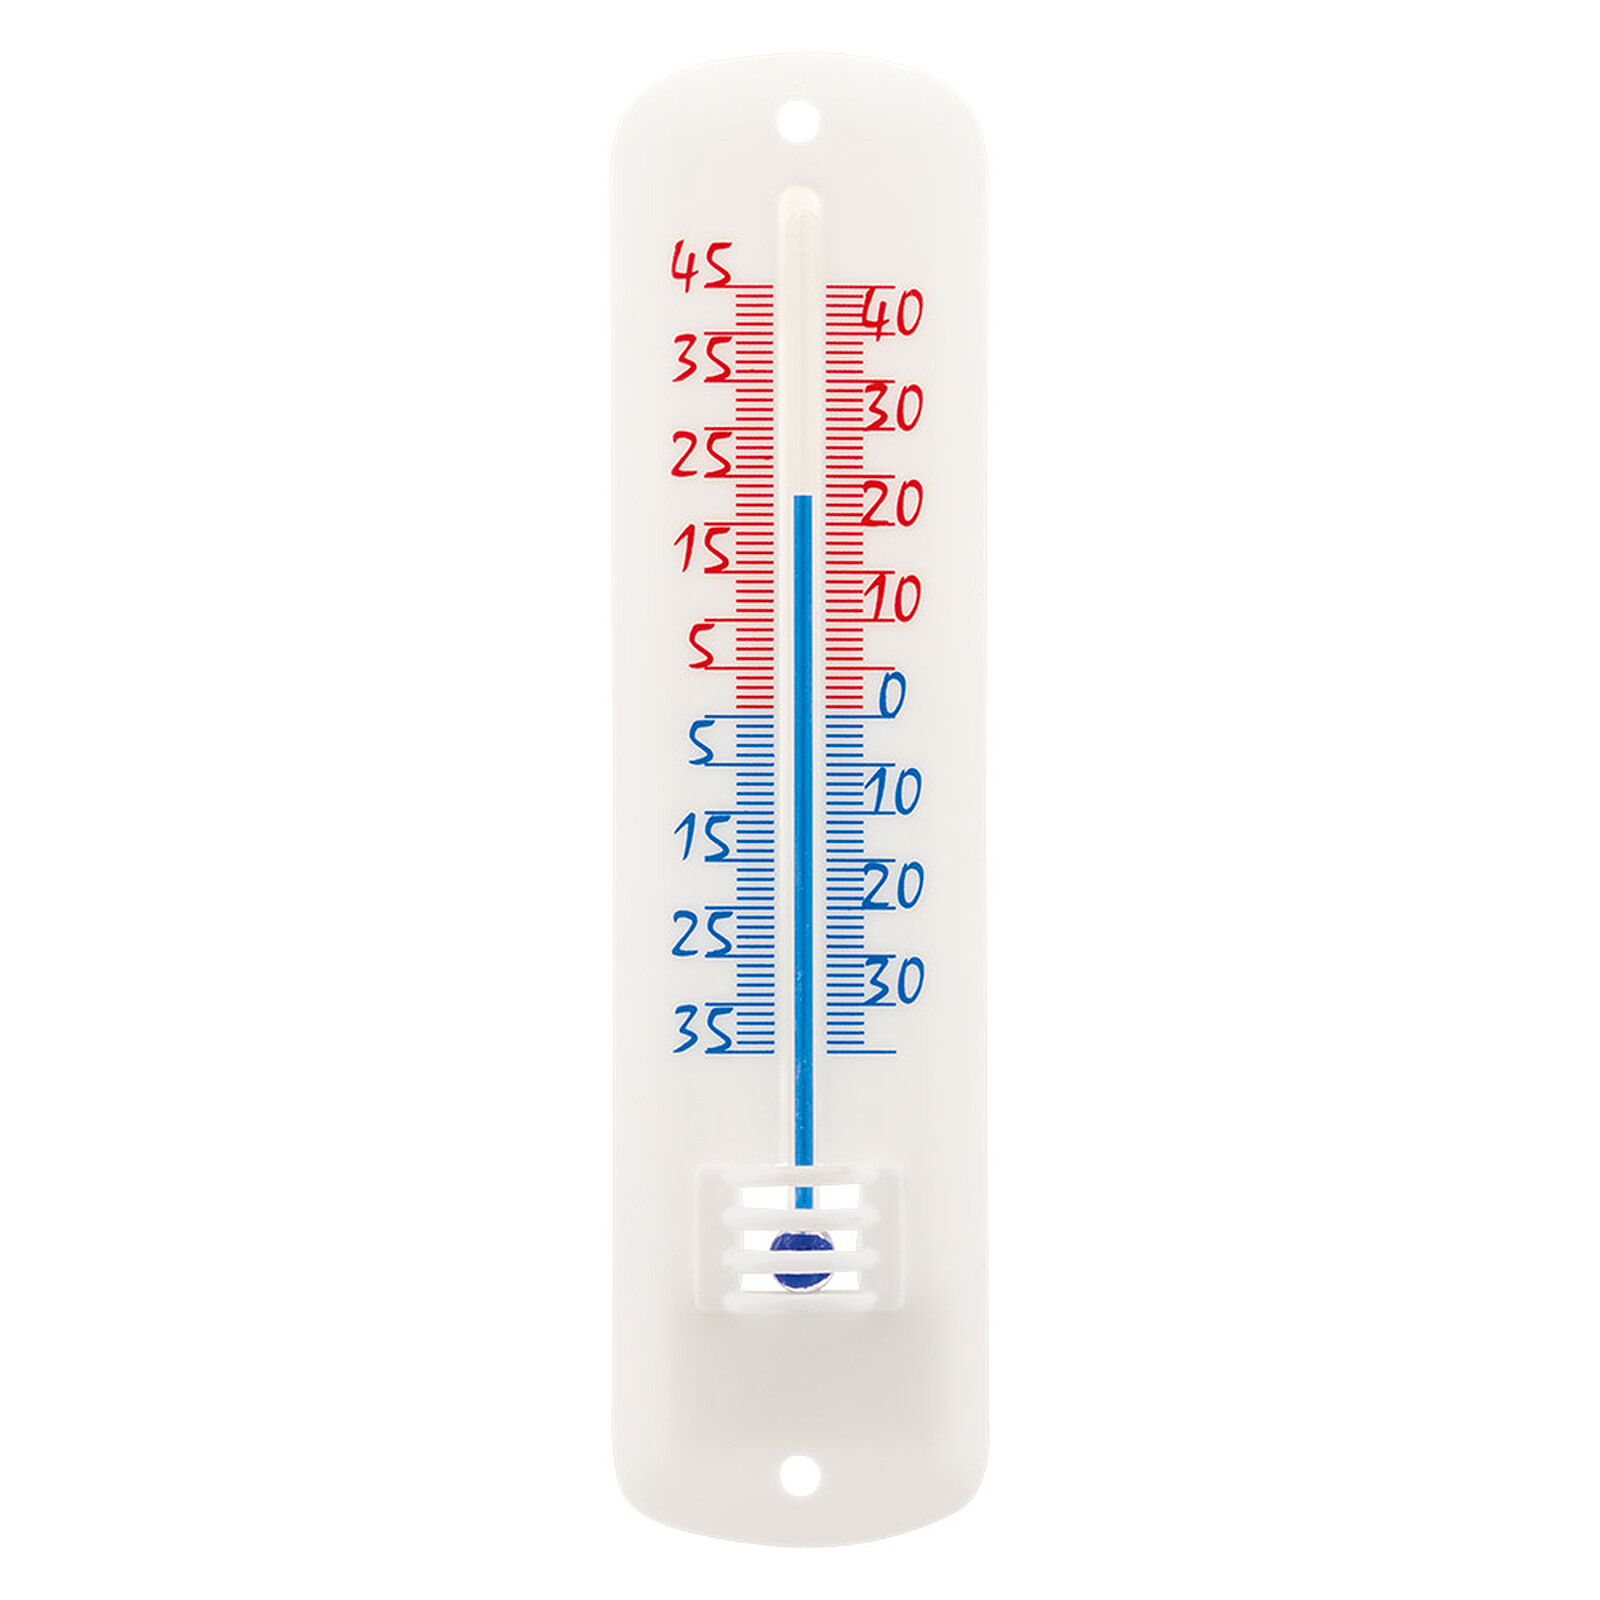 Thermomètre classique à alcool - blanc - Otio - Station Météo - LDLC